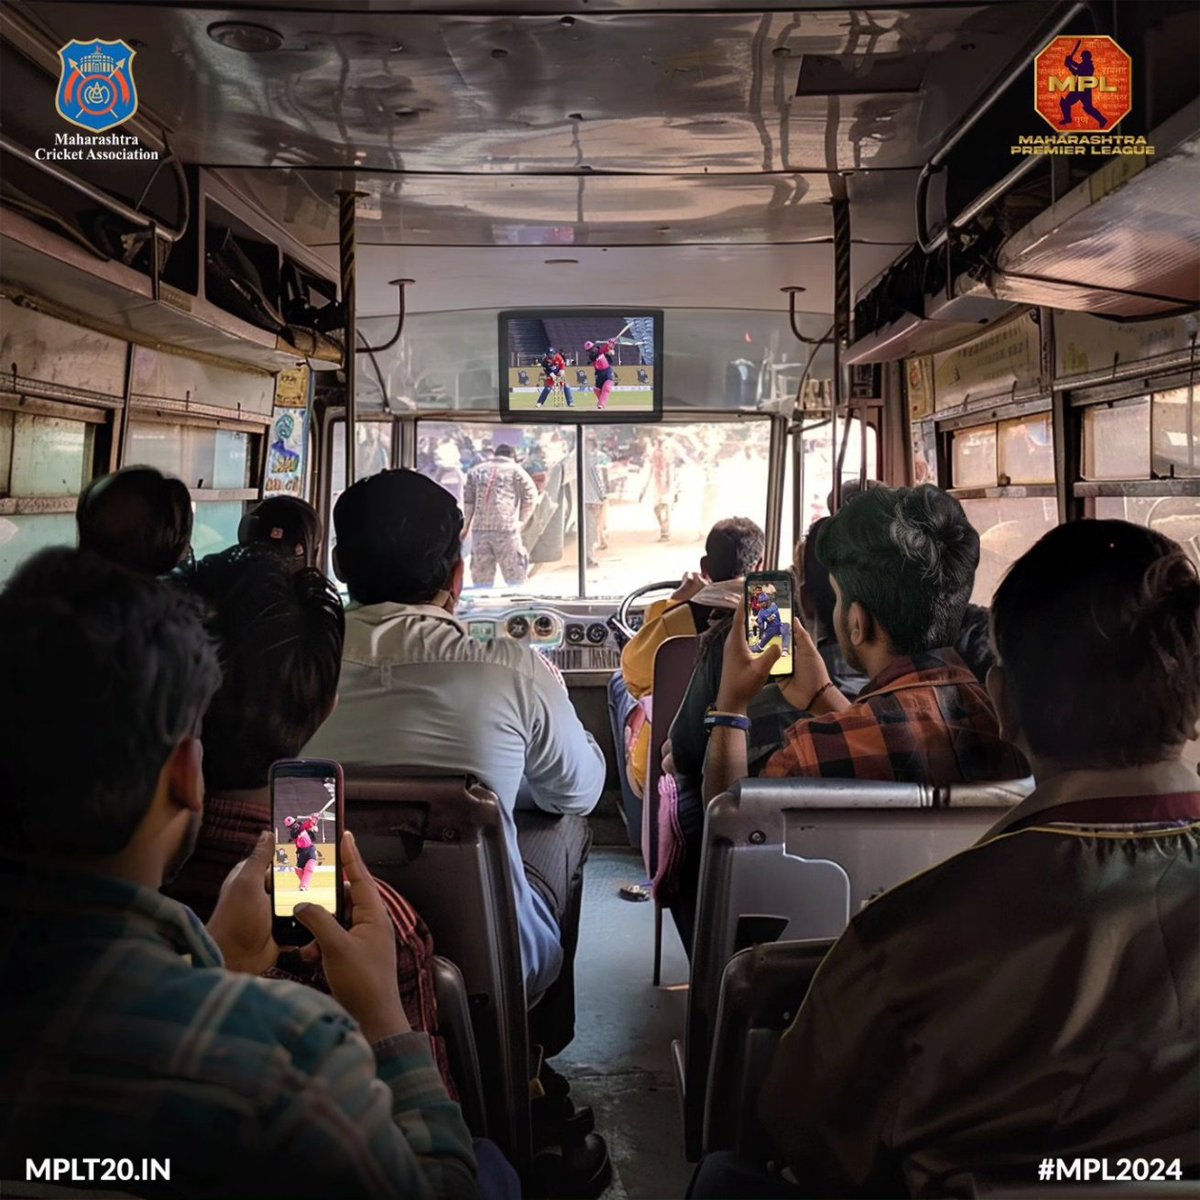 𝐌𝐏𝐋 🤝 𝐅𝐚𝐧𝐬

Big screen, bigger cheers. The #MPL spirit thrives everywhere ❤️

@MahaCricket |
#ThisIsMahaCricket #MaharahstraPremieLeague2024 #MPL2024 #Maharashtra #MaharashtraCricket #ReelItFeelIt #StartingSoon